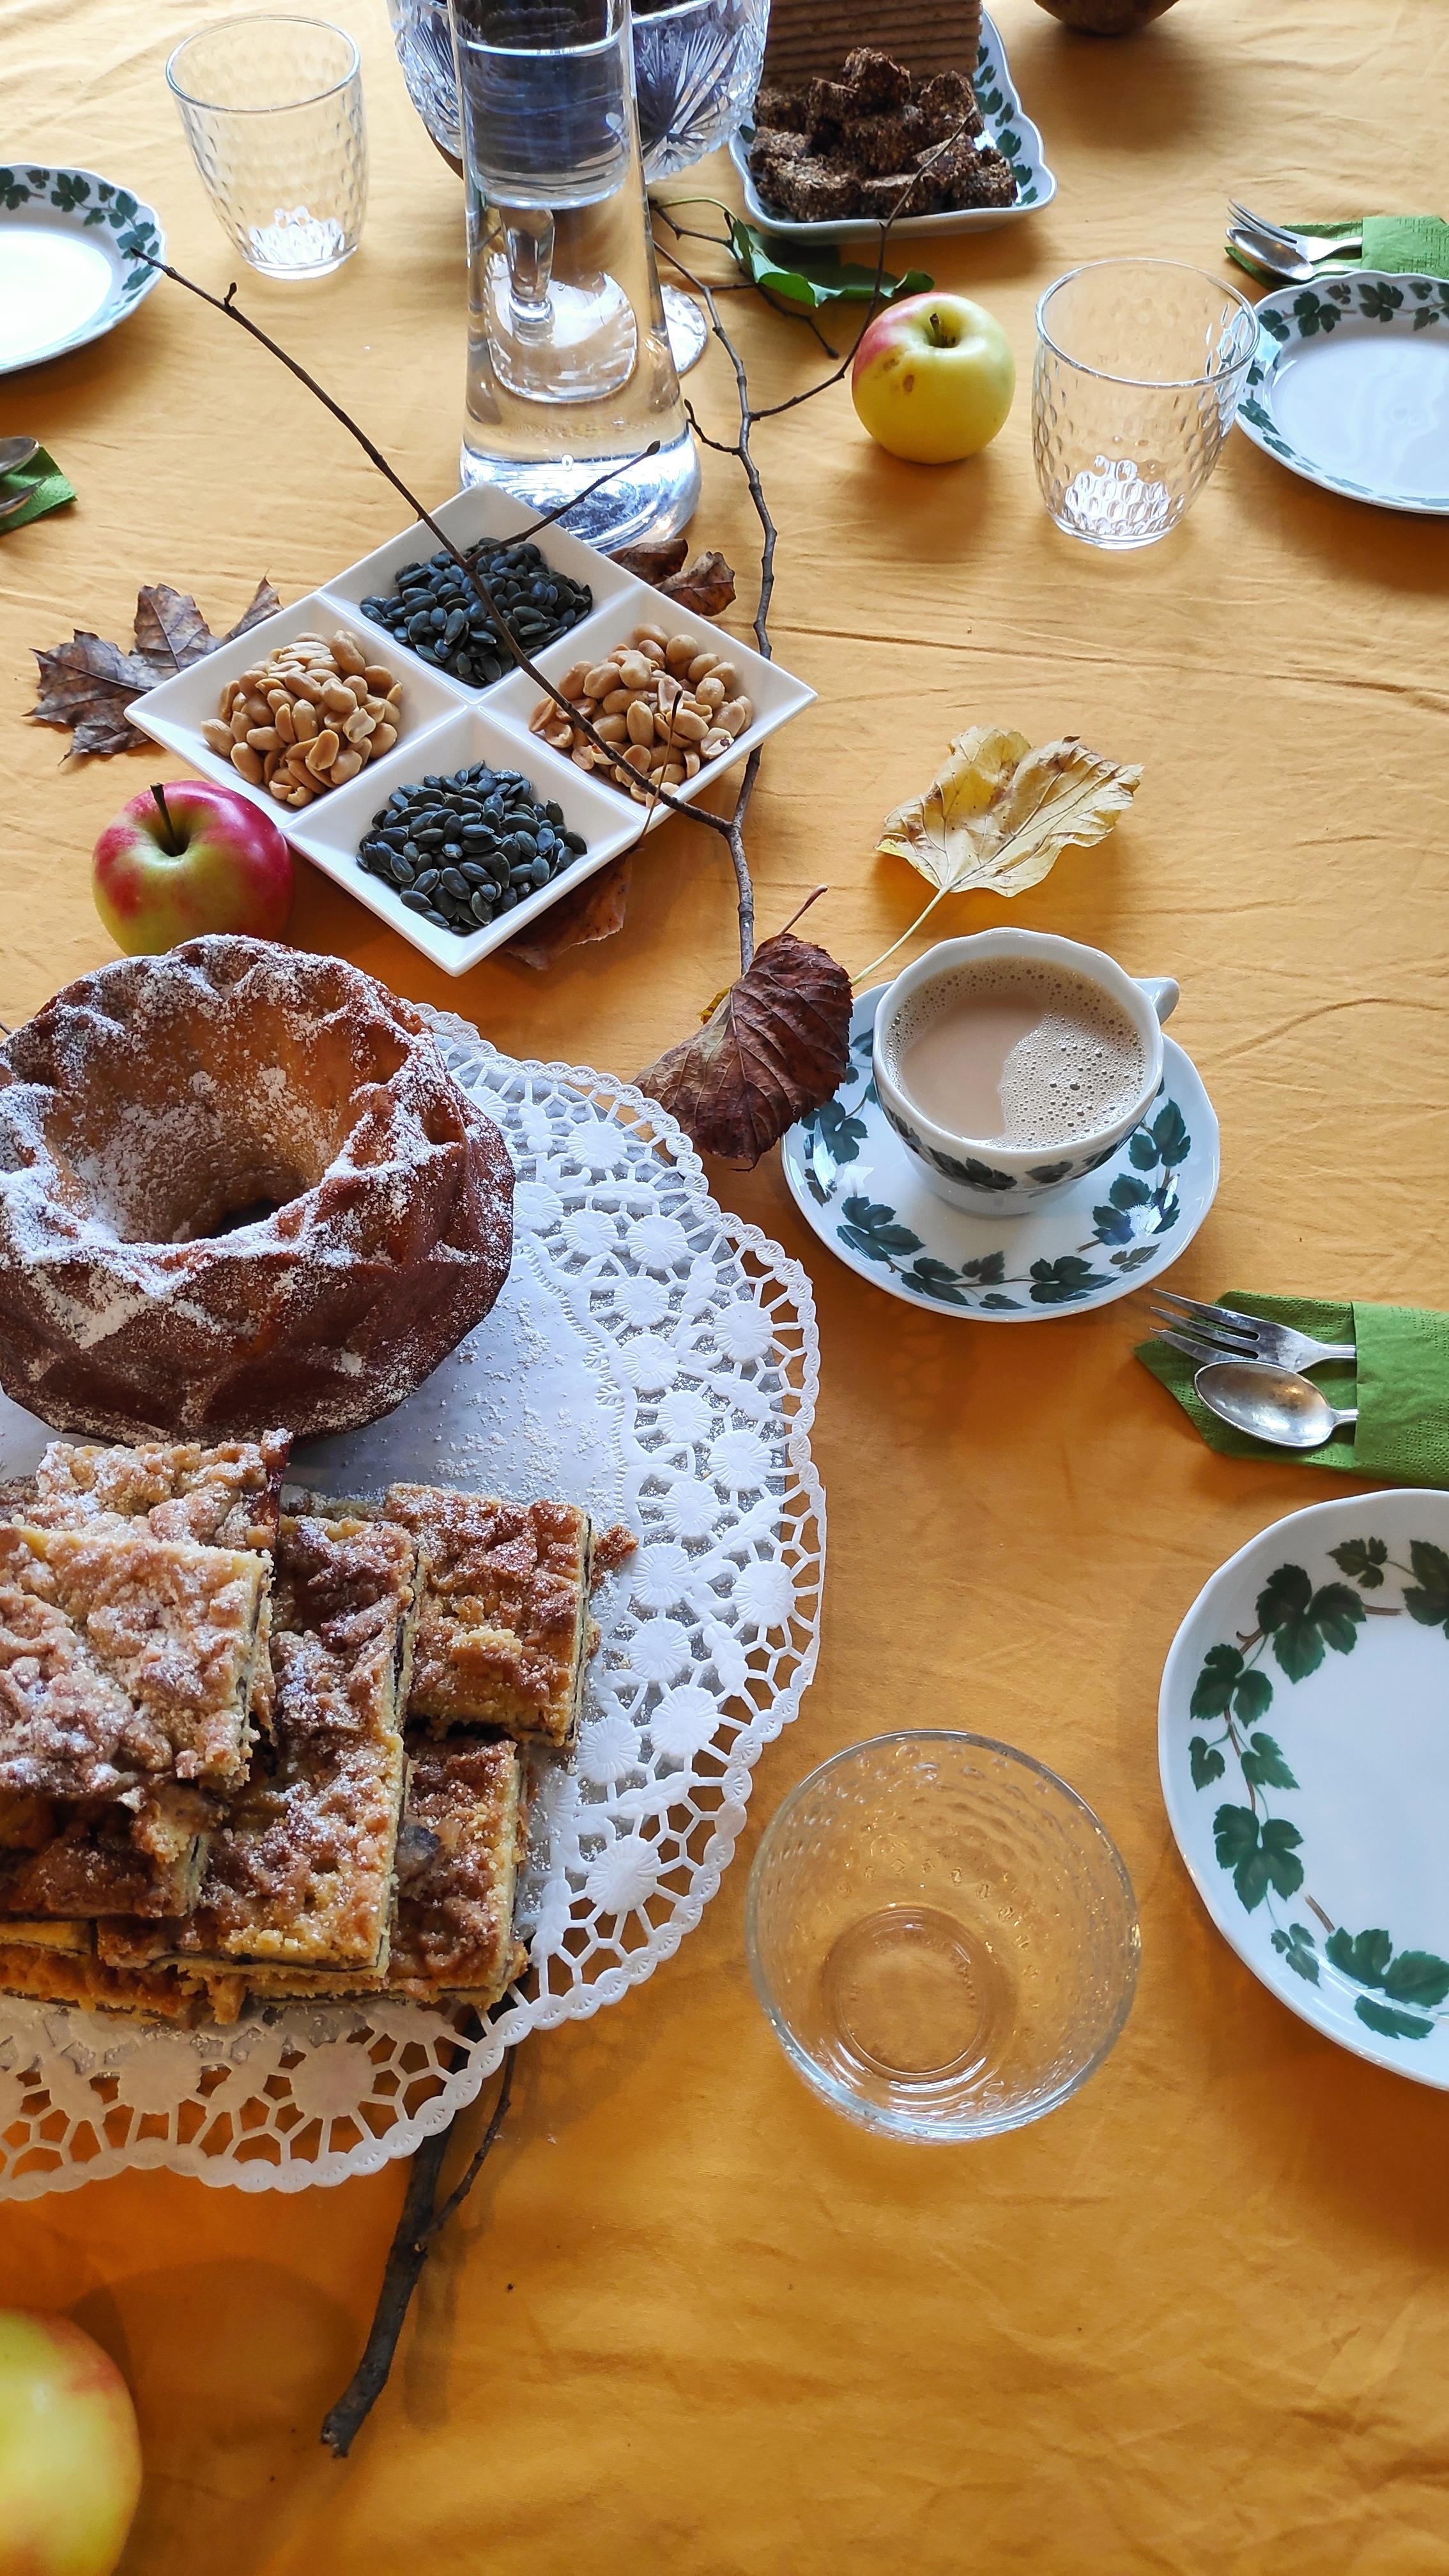 .Besuch.
#Gäste #Besuch #Herbstdeko #Tischdecken #Tisch #Kuchen #Apfel #Kaffee #Apfelkuchen #Eierlikörkuchen